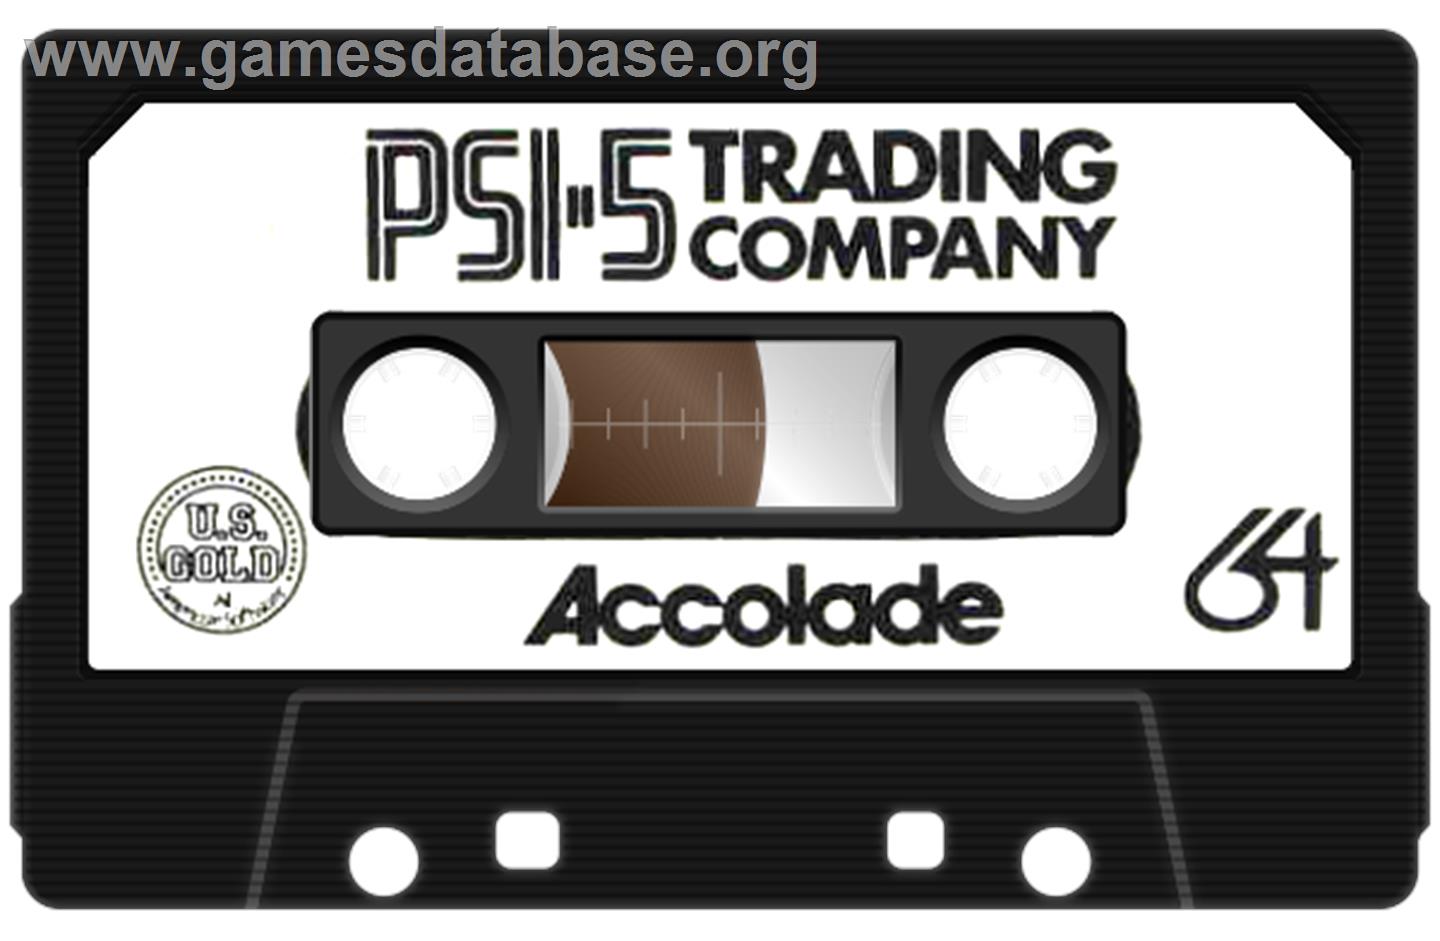 Psi-5 Trading Company - Commodore 64 - Artwork - Cartridge